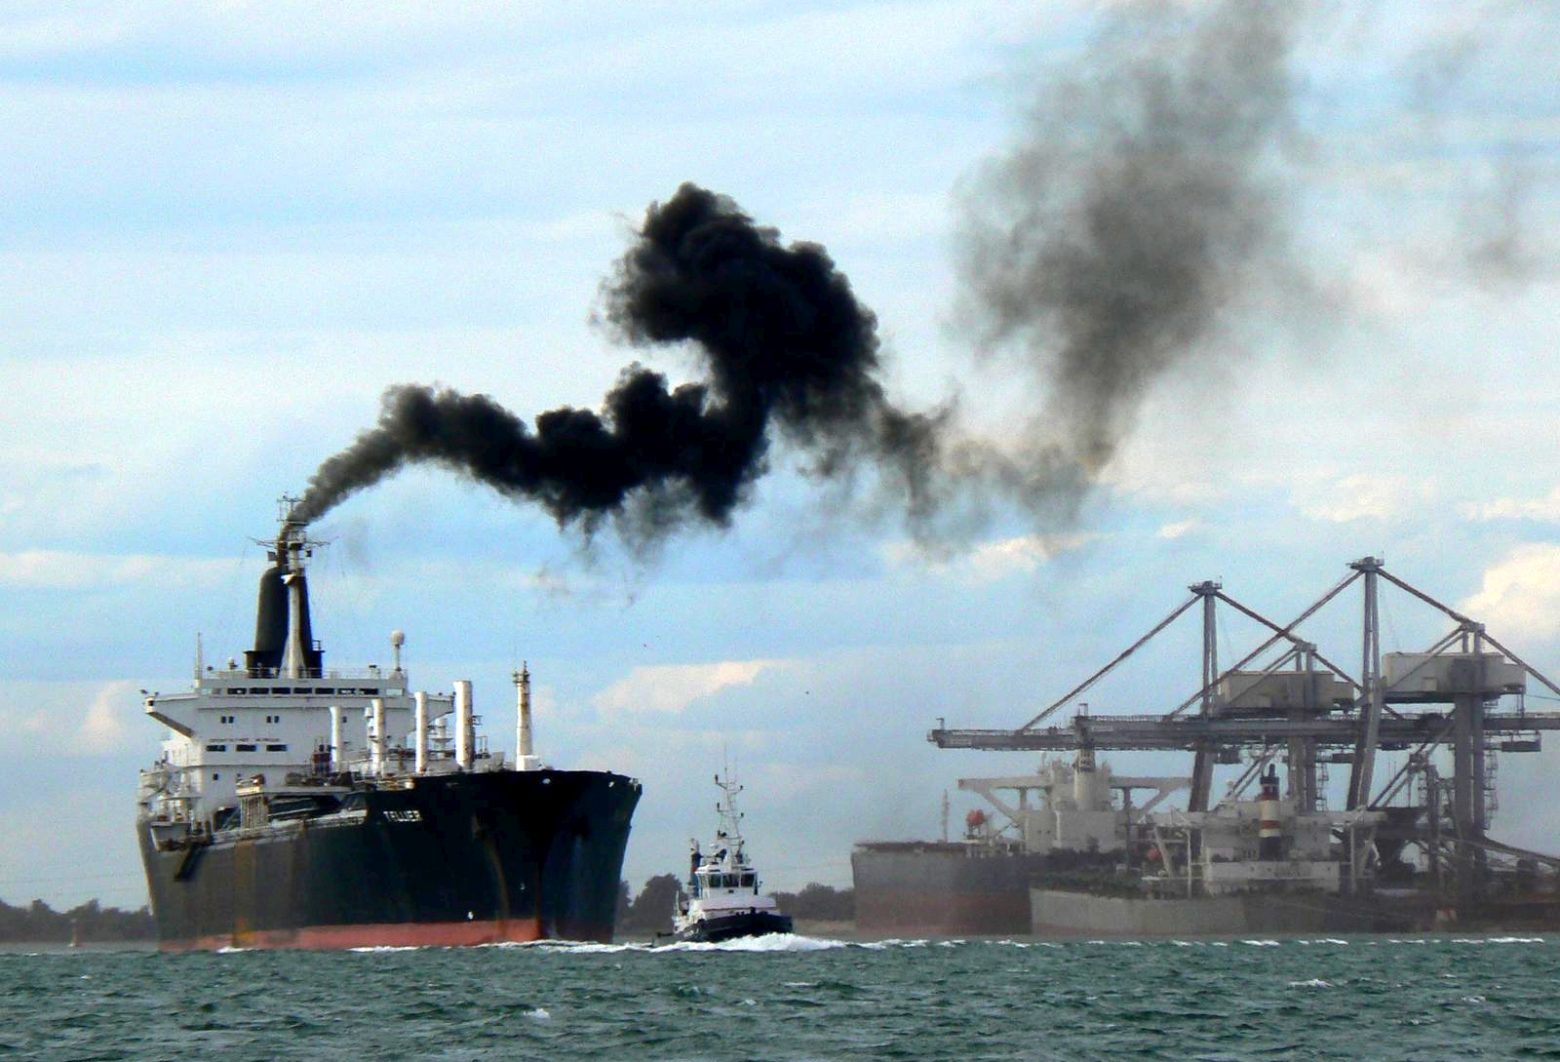 Κυπριακό ναυτικό Επιμελητήριο: Λέει όχι στην ένταξη της ναυτιλίας στο σύστημα εμπορίας ρύπων